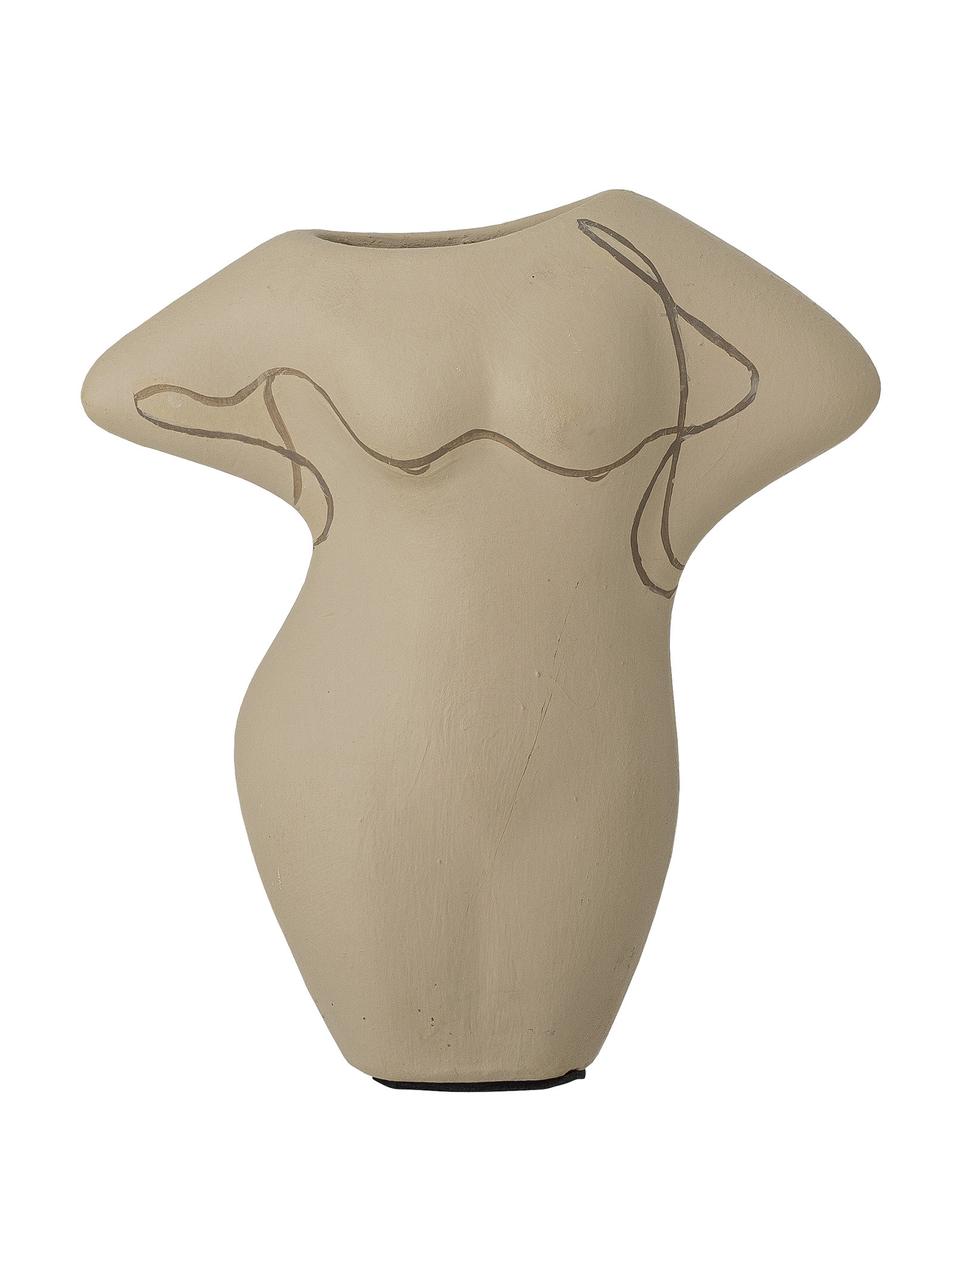 Deko-Vase Lulu aus Terrakotta, Terracotta, Braun, B 14 x H 16 cm